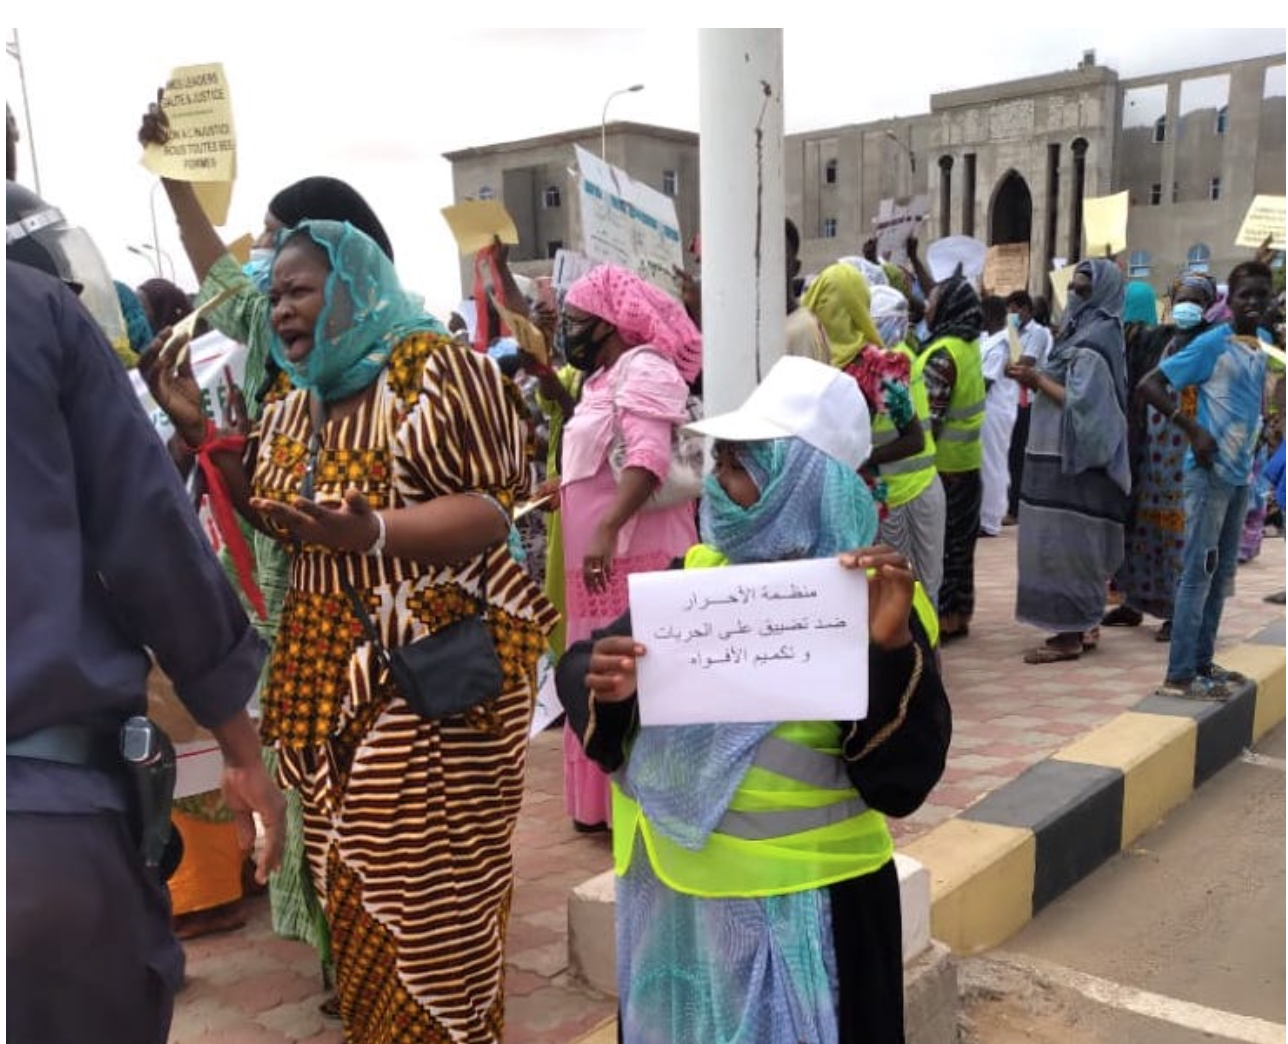 Mauritanie: manifestation de SPD pour réclamer la justice et l’égalité